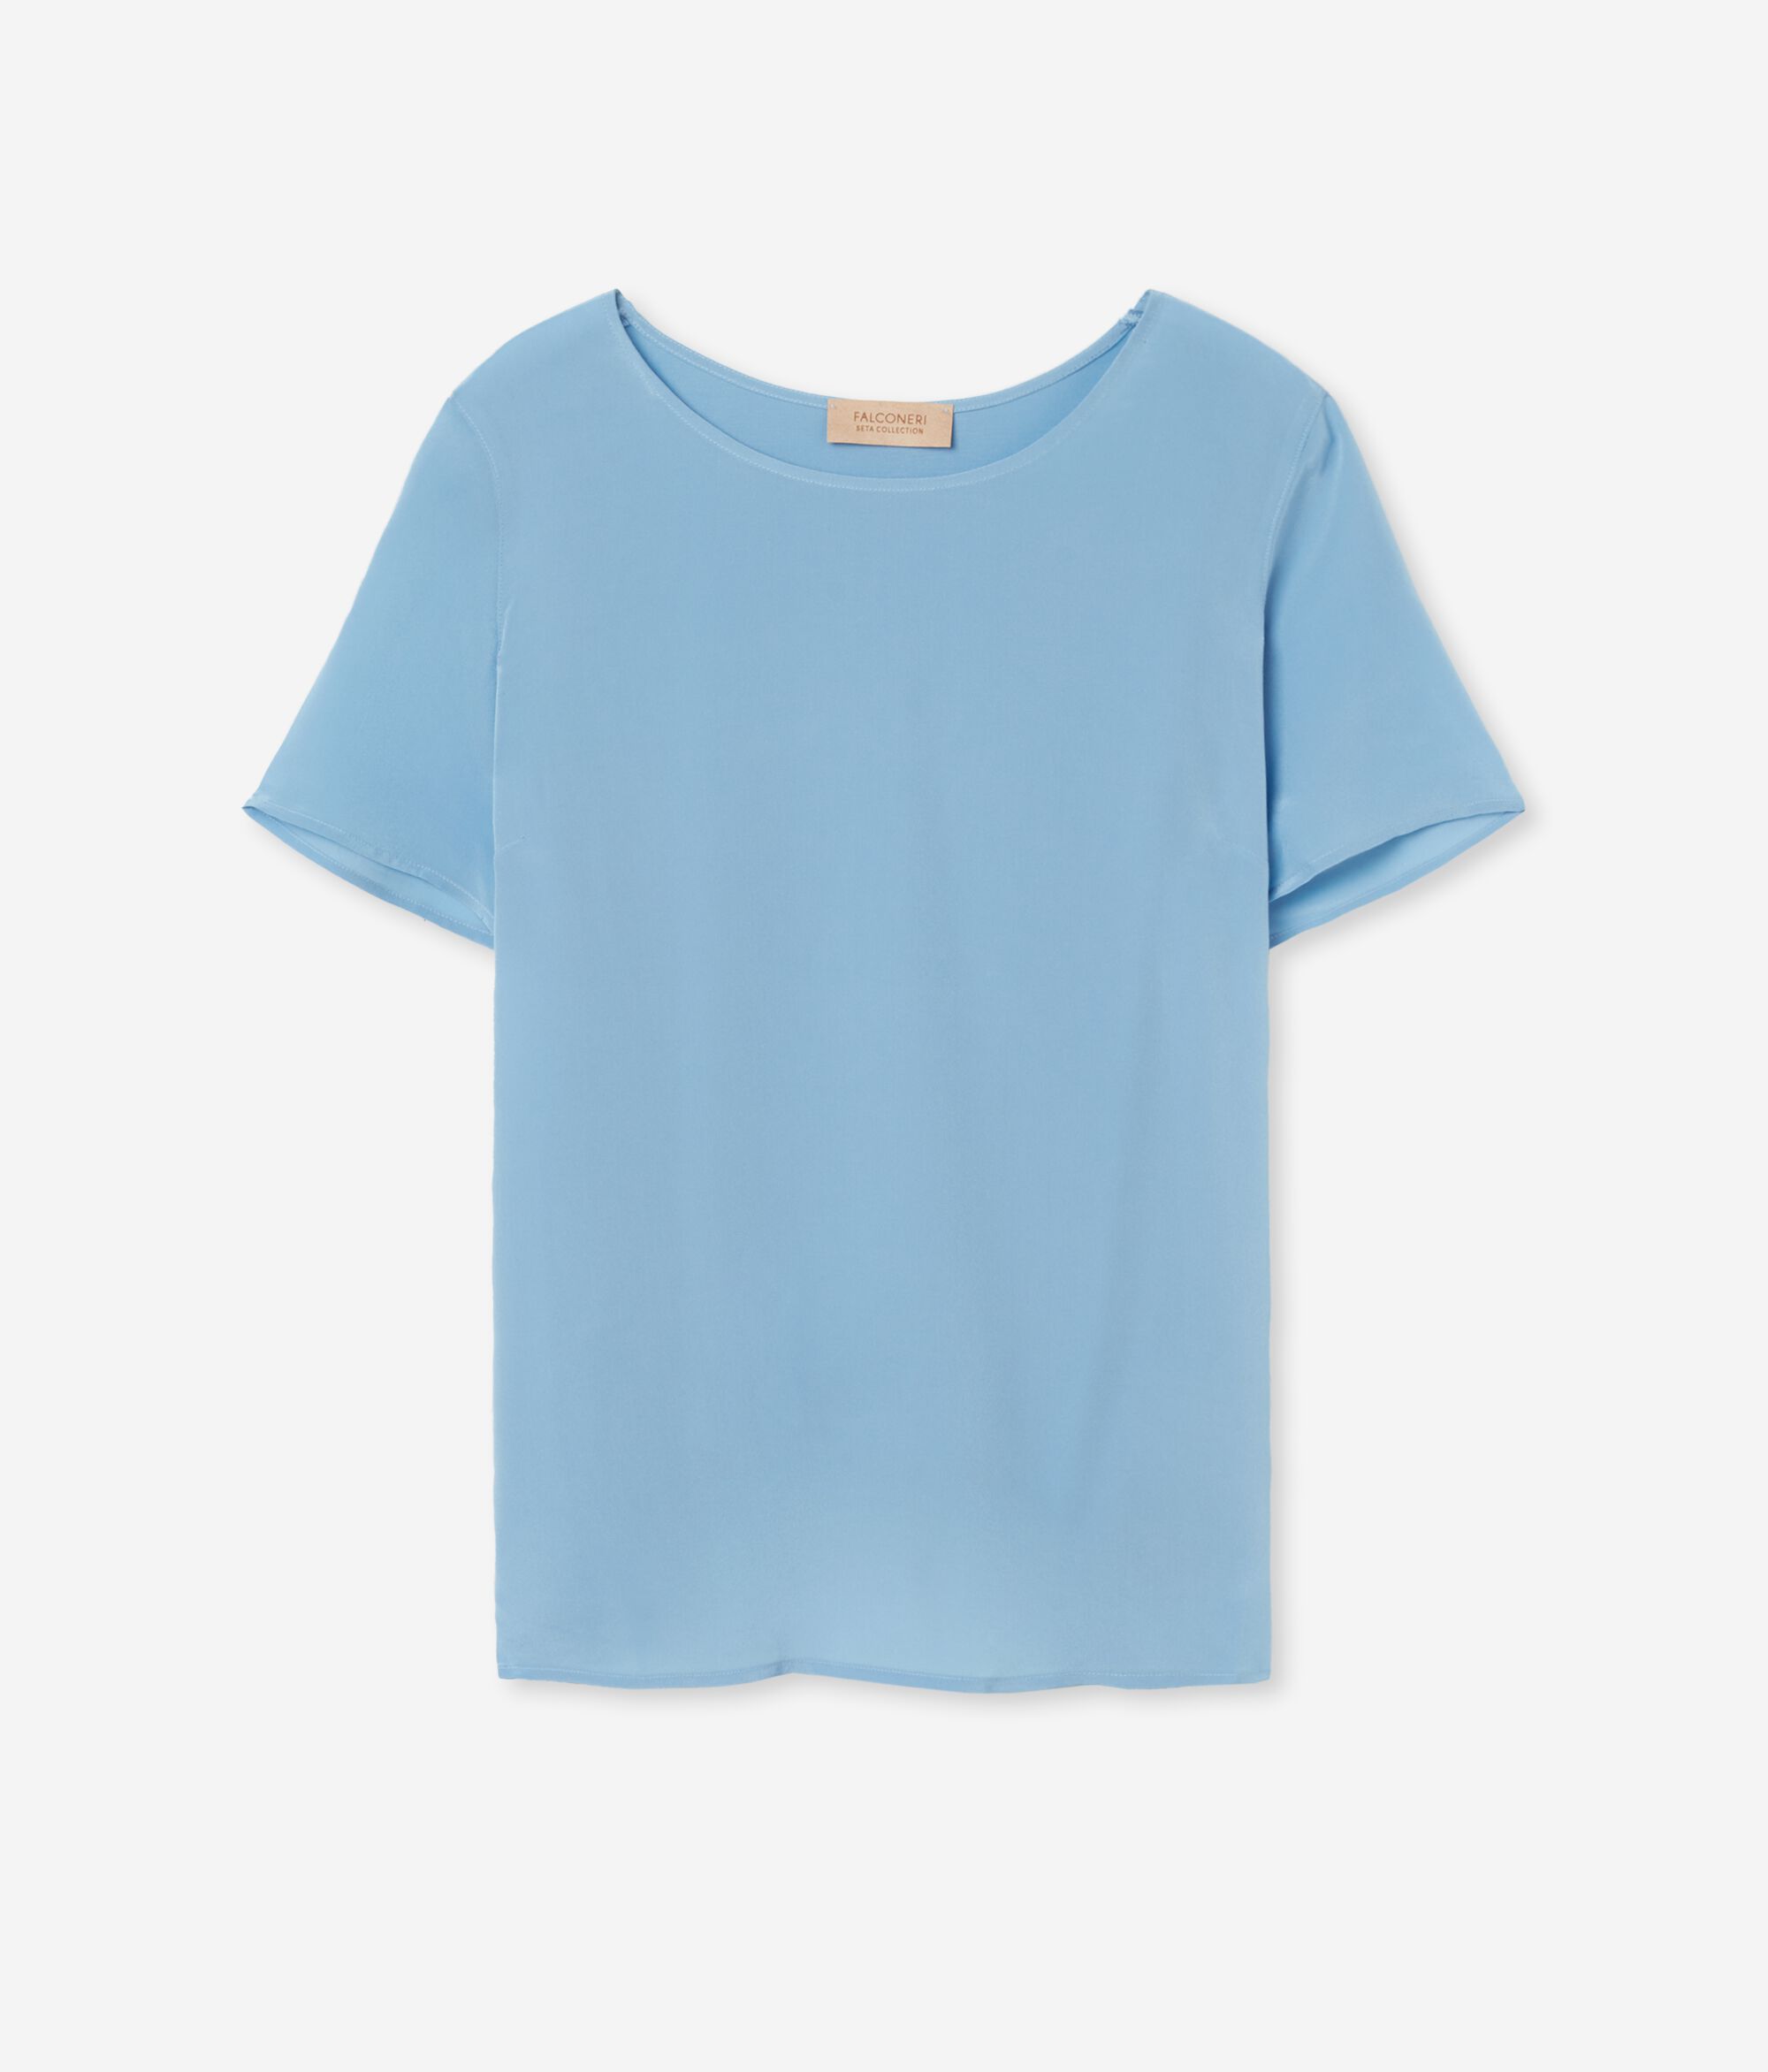 T-shirt s kružnim ovratnikom od svile